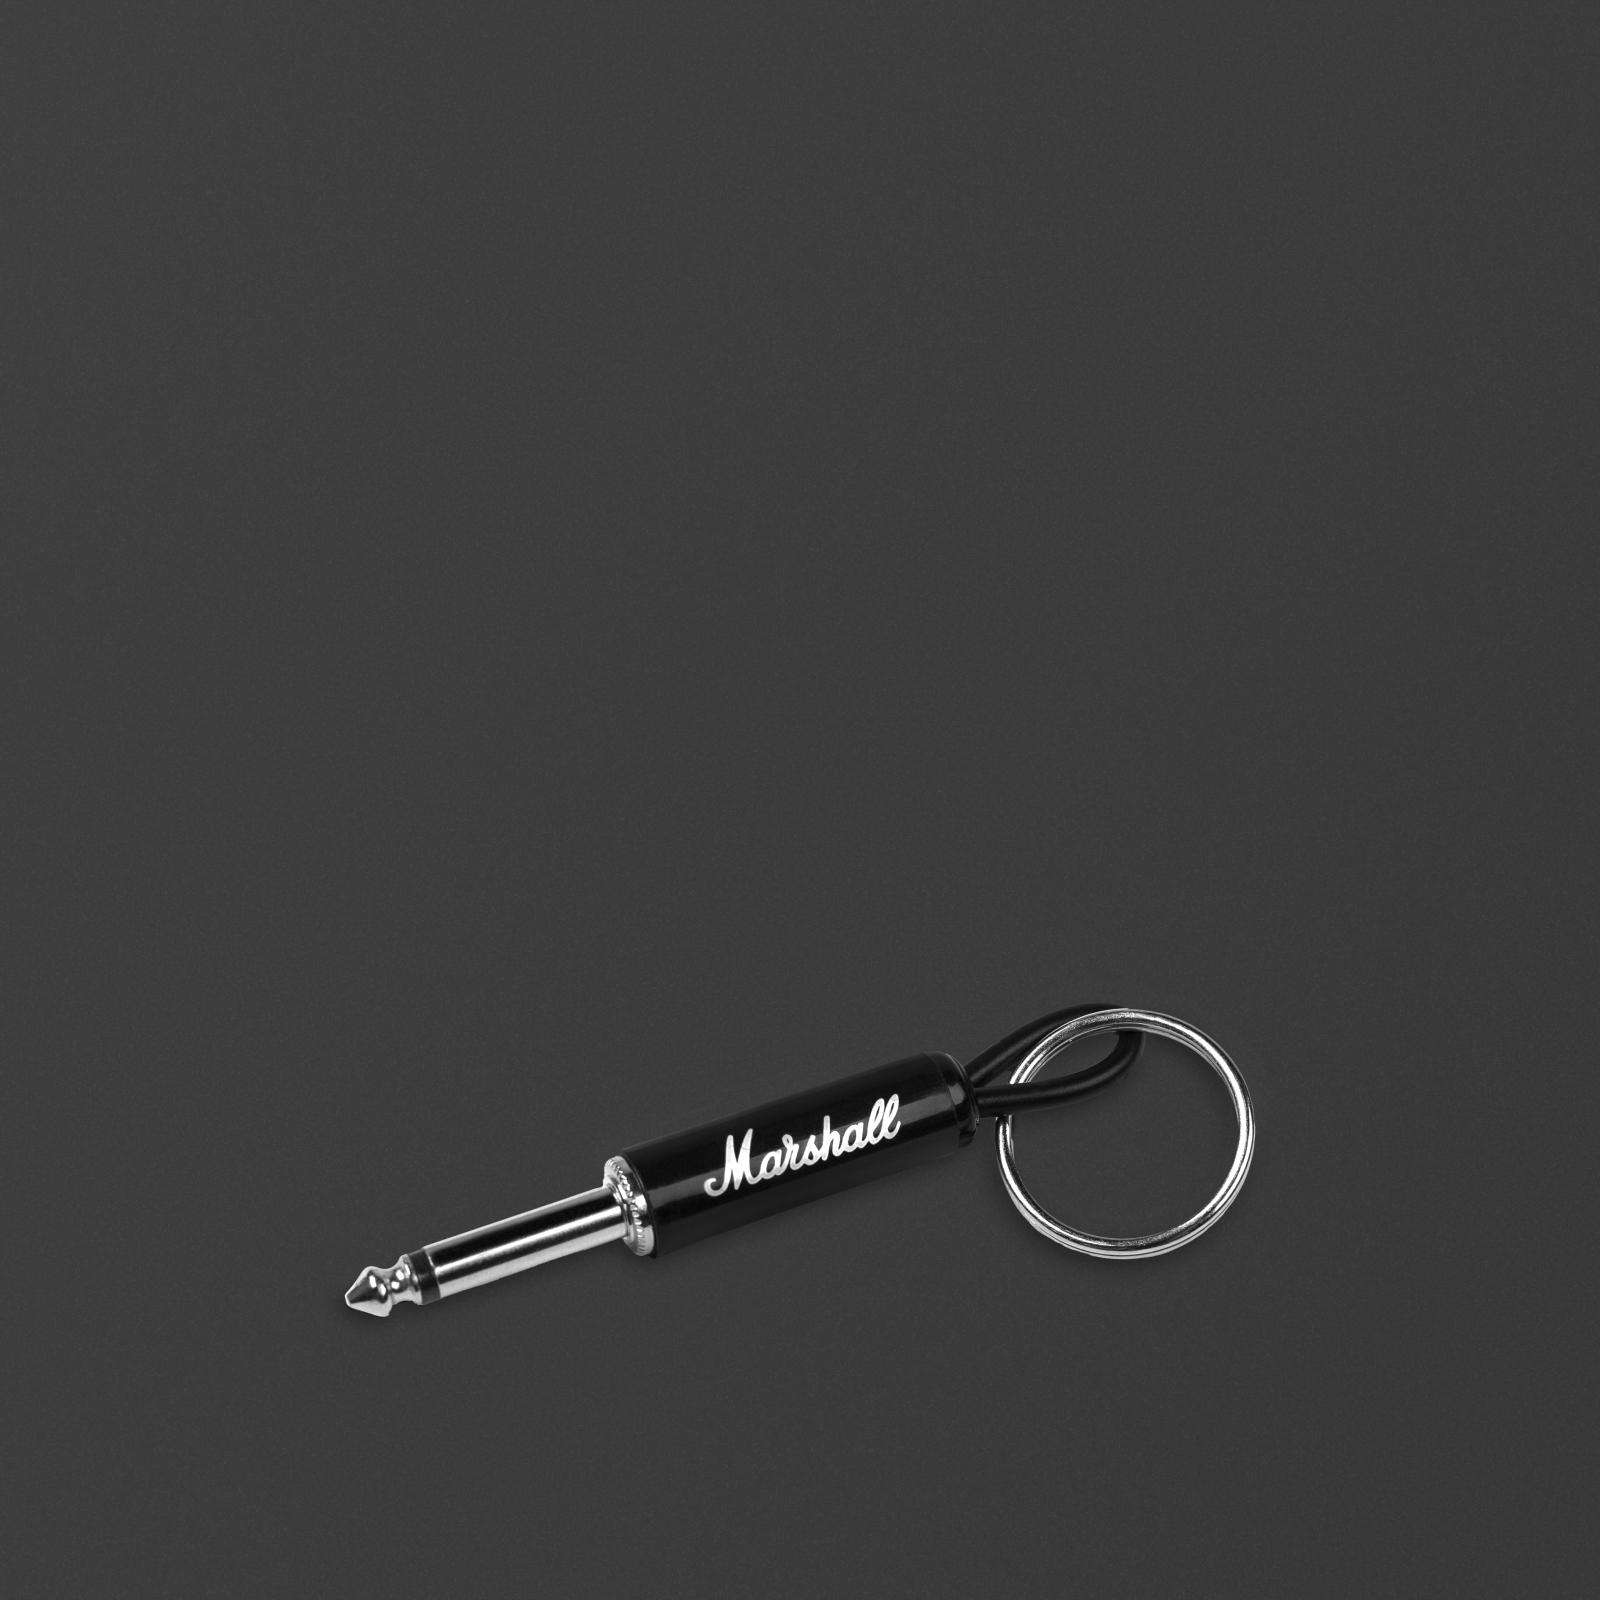 Porte-clés jack de guitare noir avec logo Marshall script